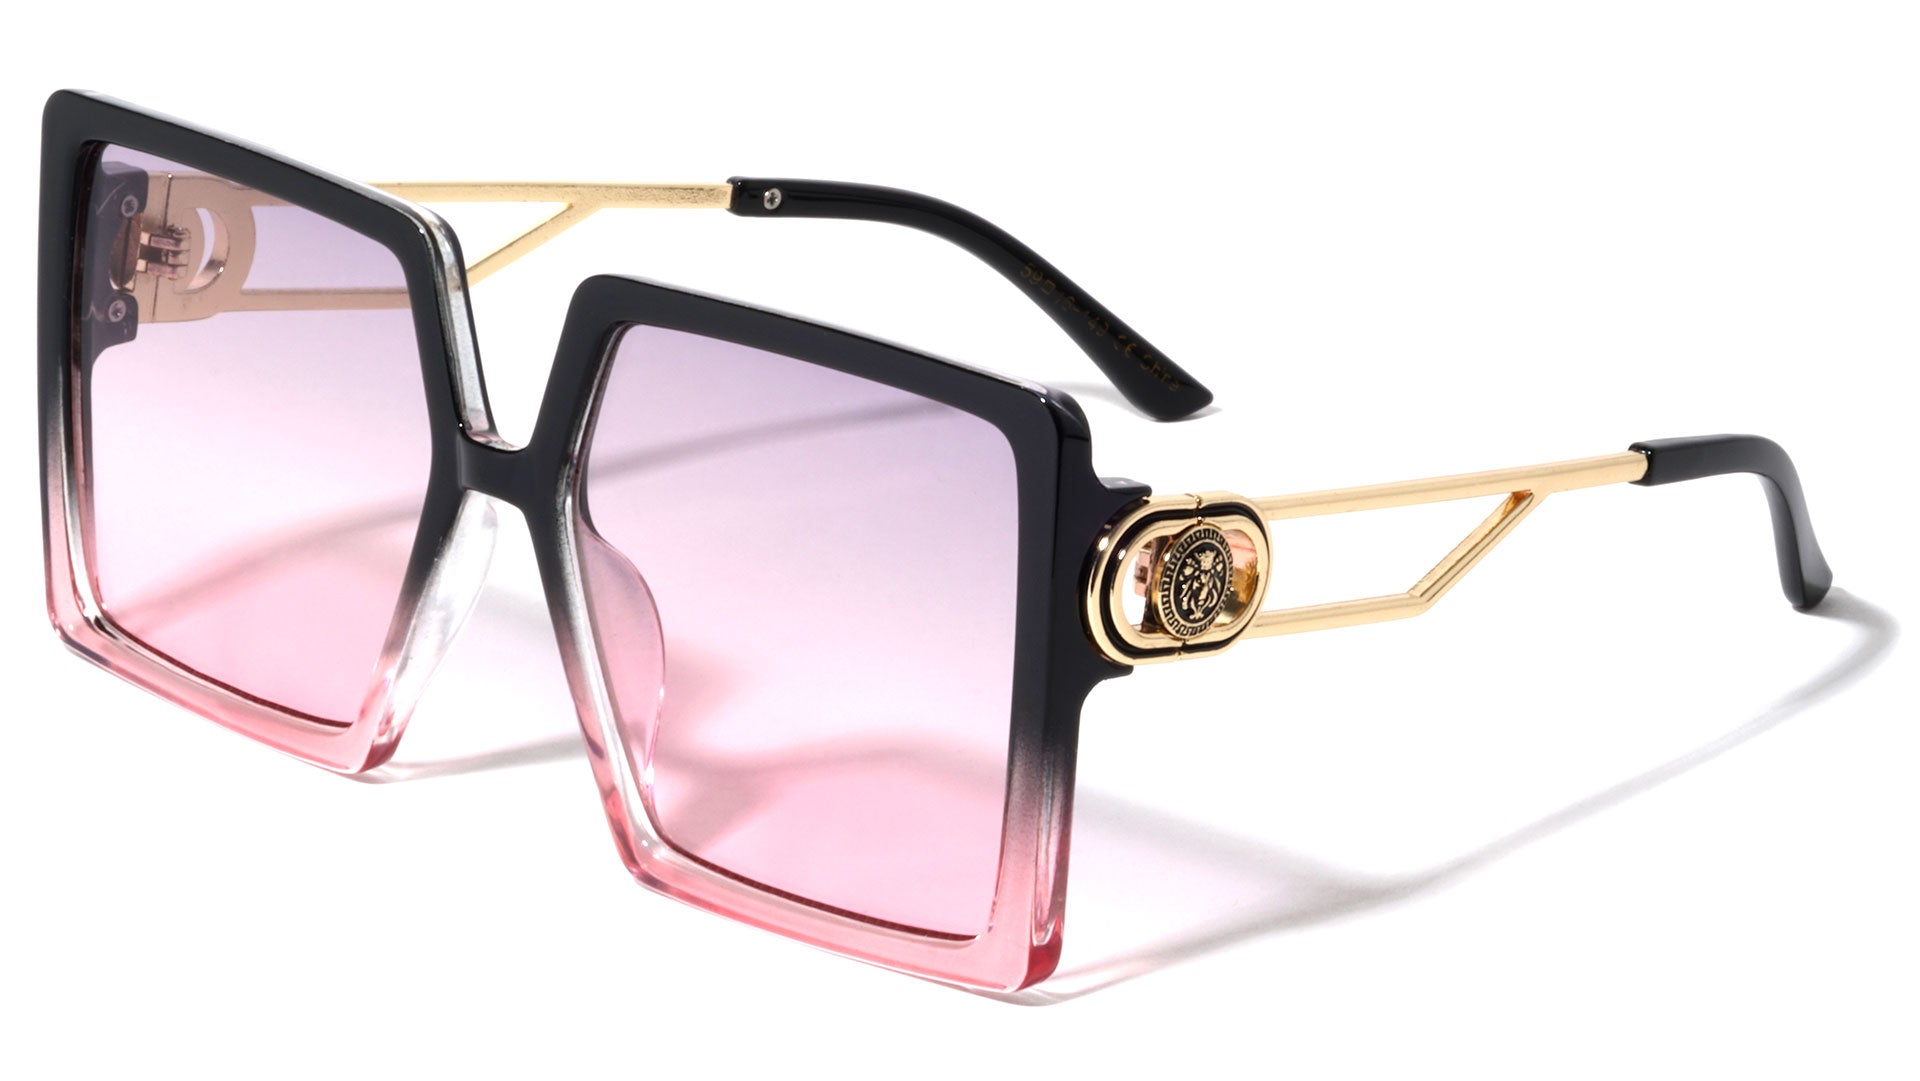 LH-M7828 KLEO Rectangle Wholesale Fashion Sunglasses - Frontier